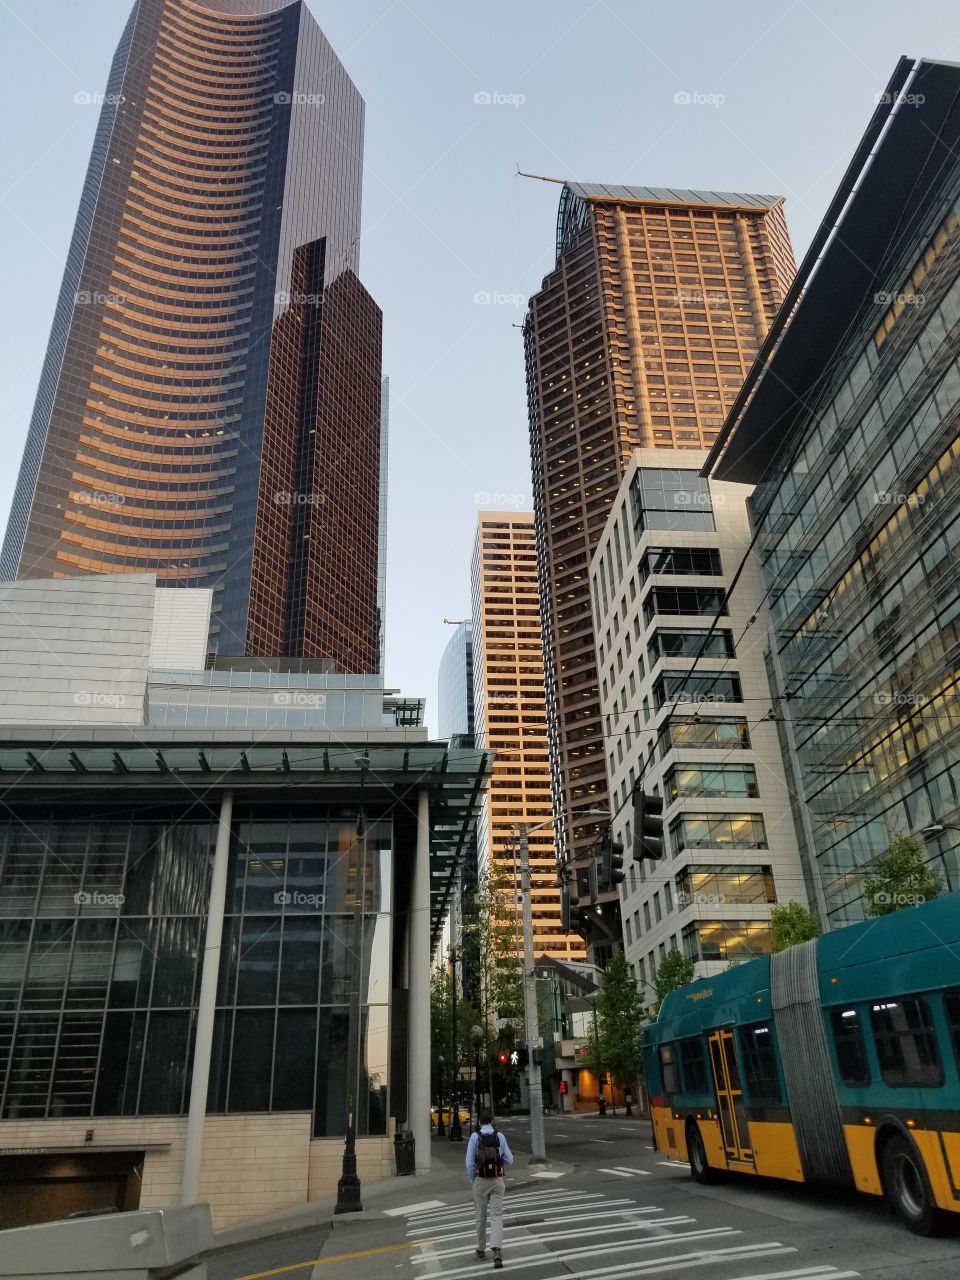 Seattle streets cross walk